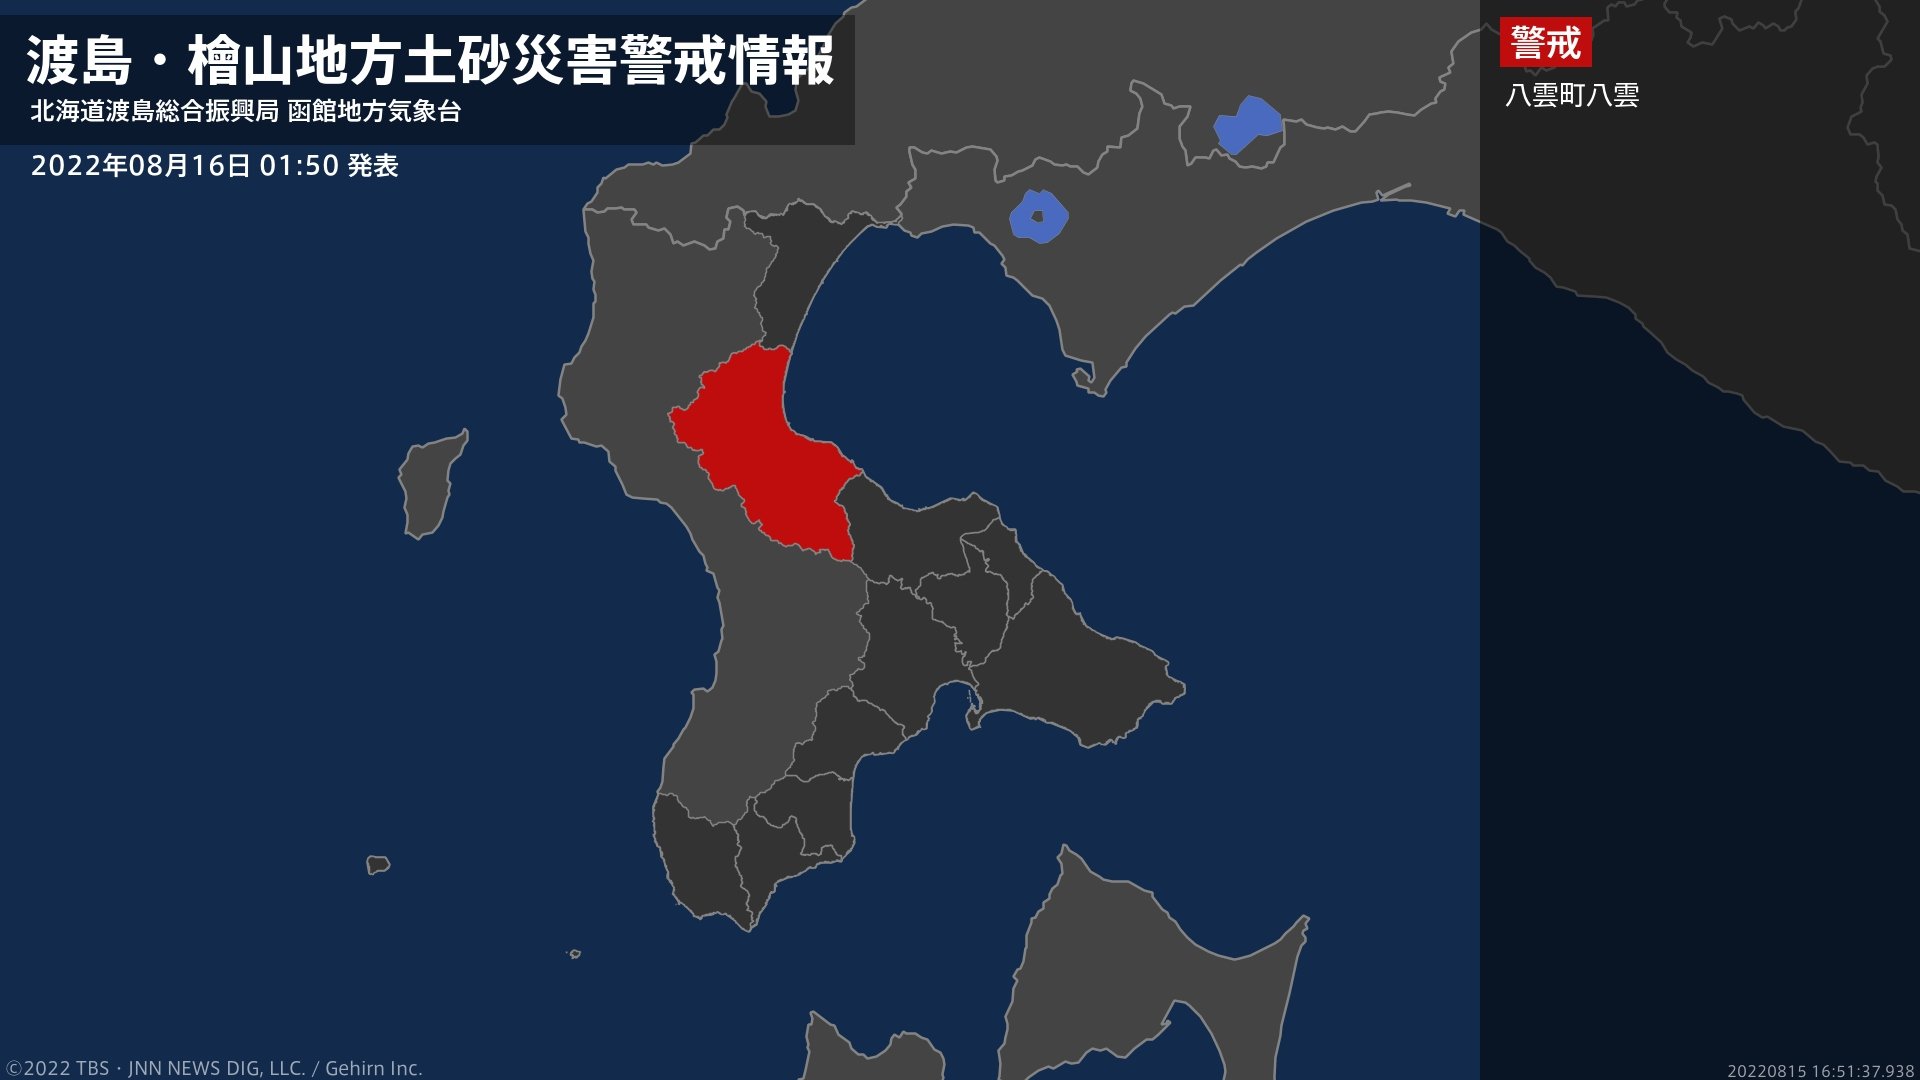 【土砂災害警戒情報】北海道・八雲町八雲に発表